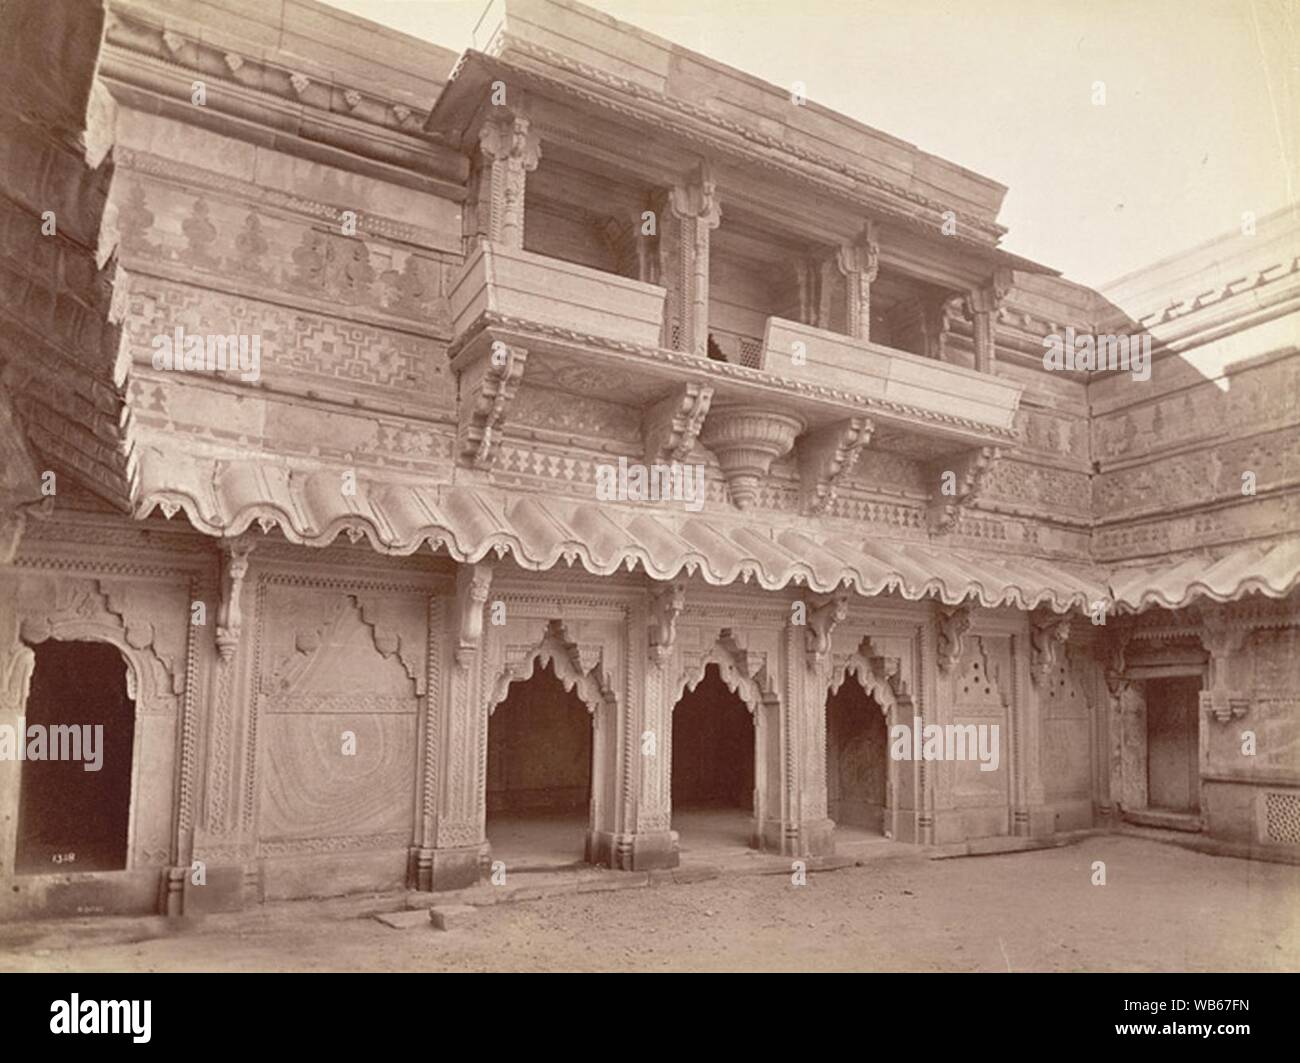 Cara oriental del patio interior de la fortaleza de Gwalior Man Mandir. Foto de stock